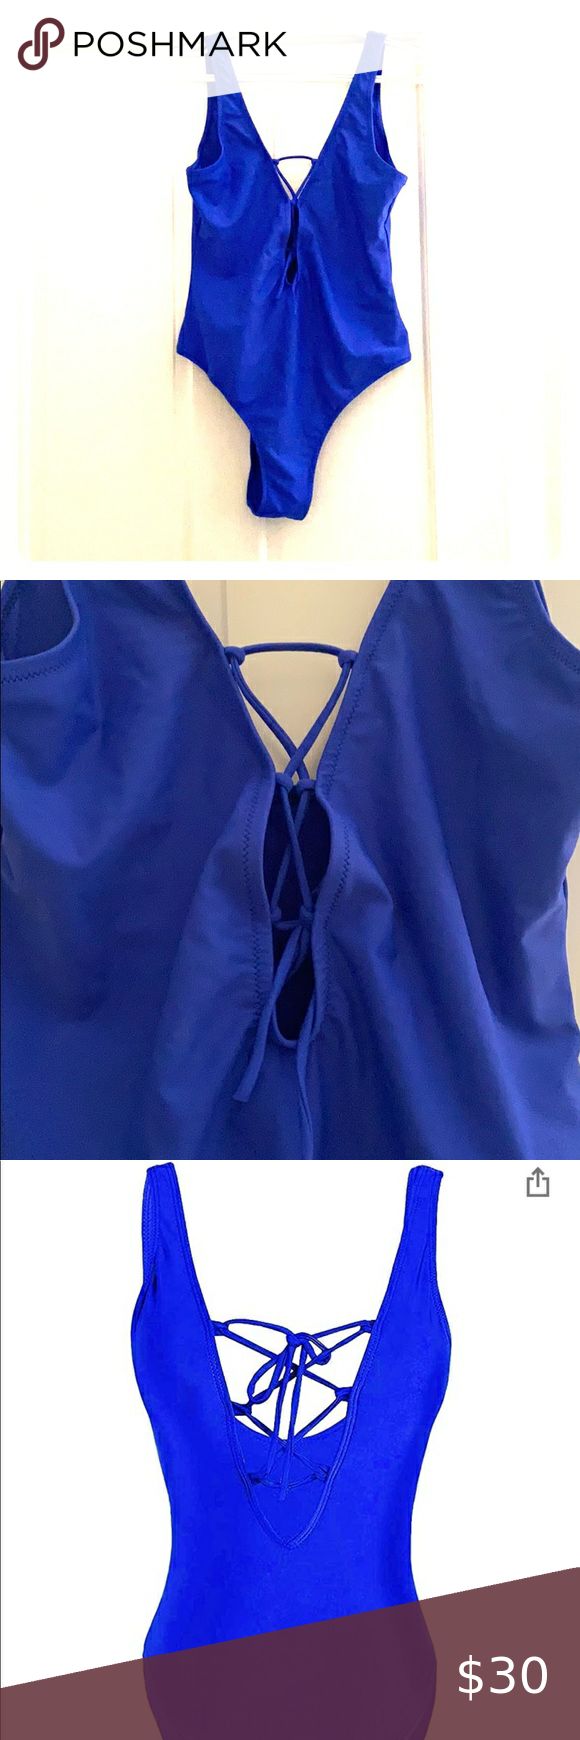 Royal blue bathing suit | Blue bathing suit, Royal blue bathing suit